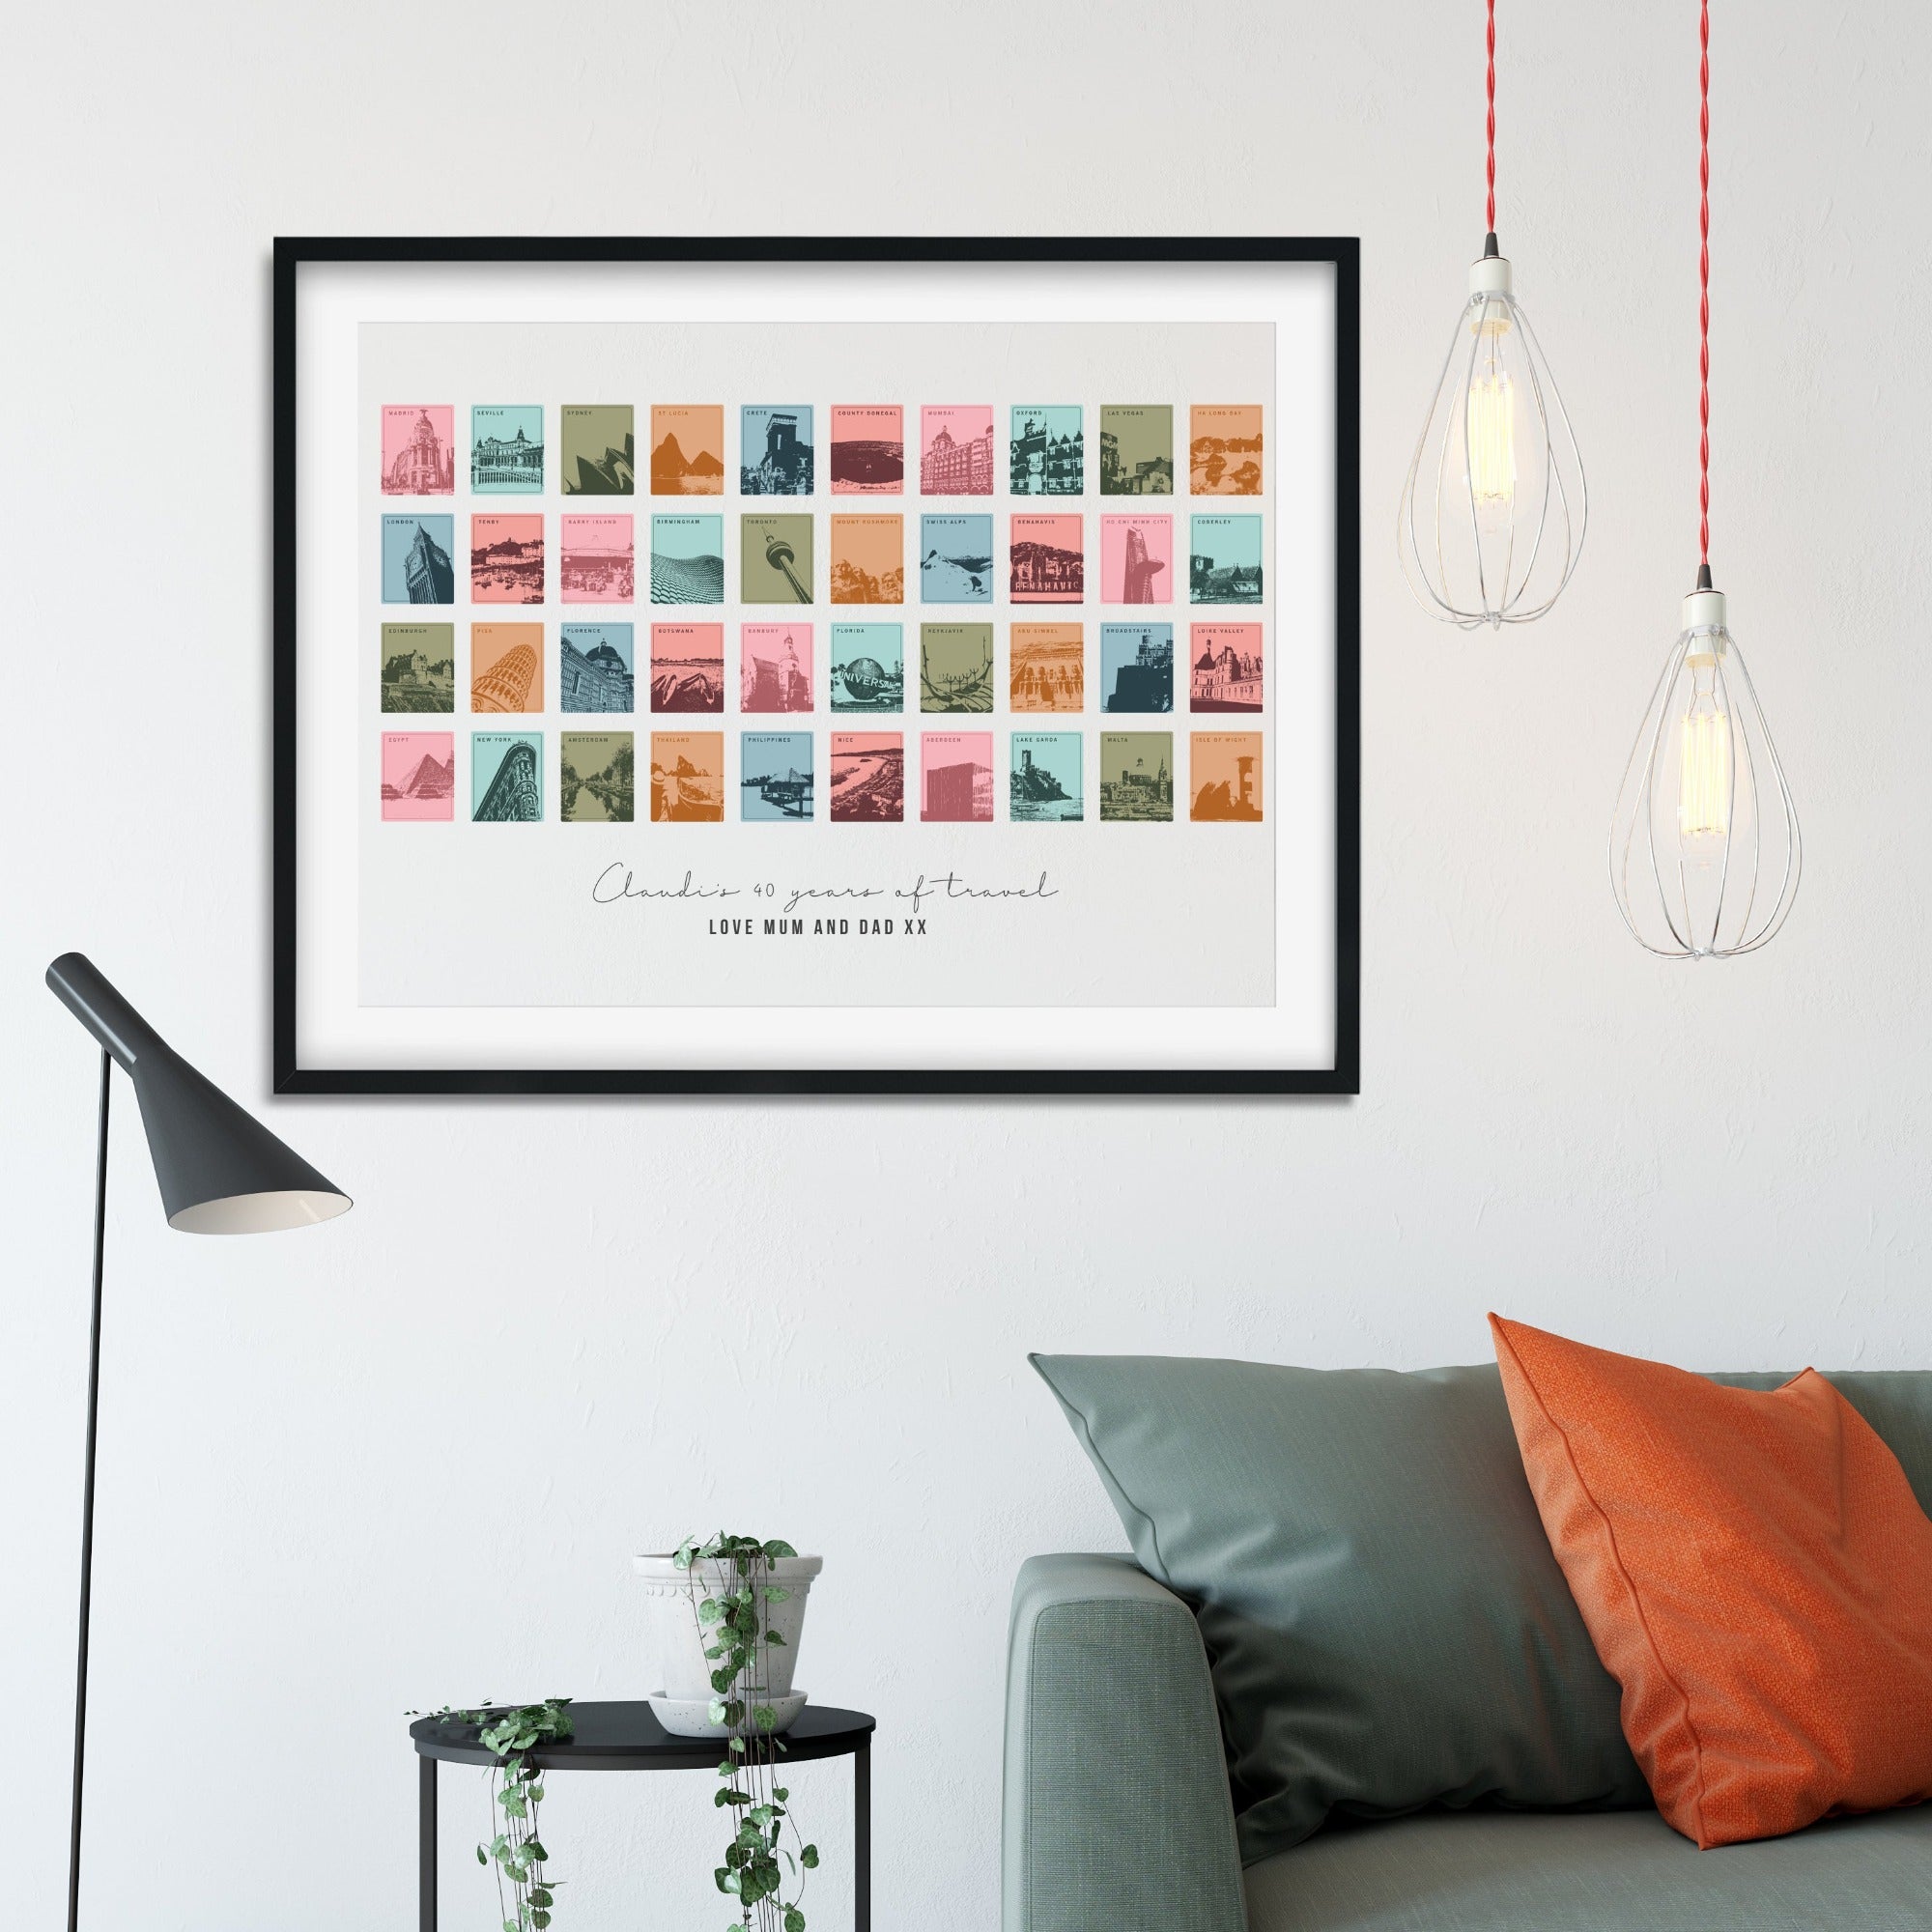 Framed print showing 40 travel destination images